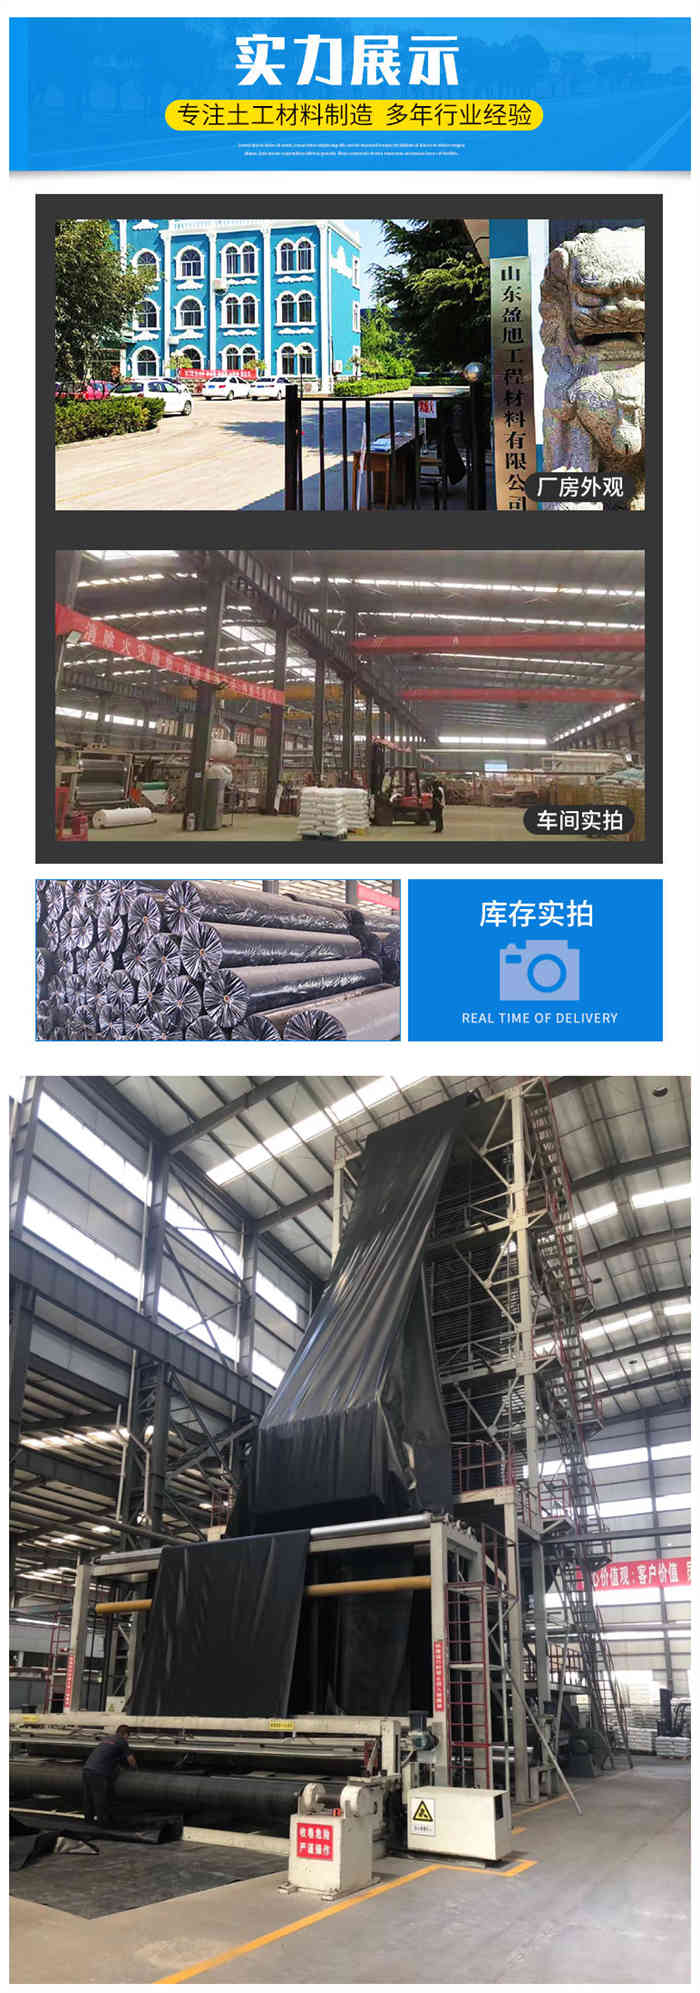 扬州海水养殖土工膜图片第5张-乐鱼app官网土工材料